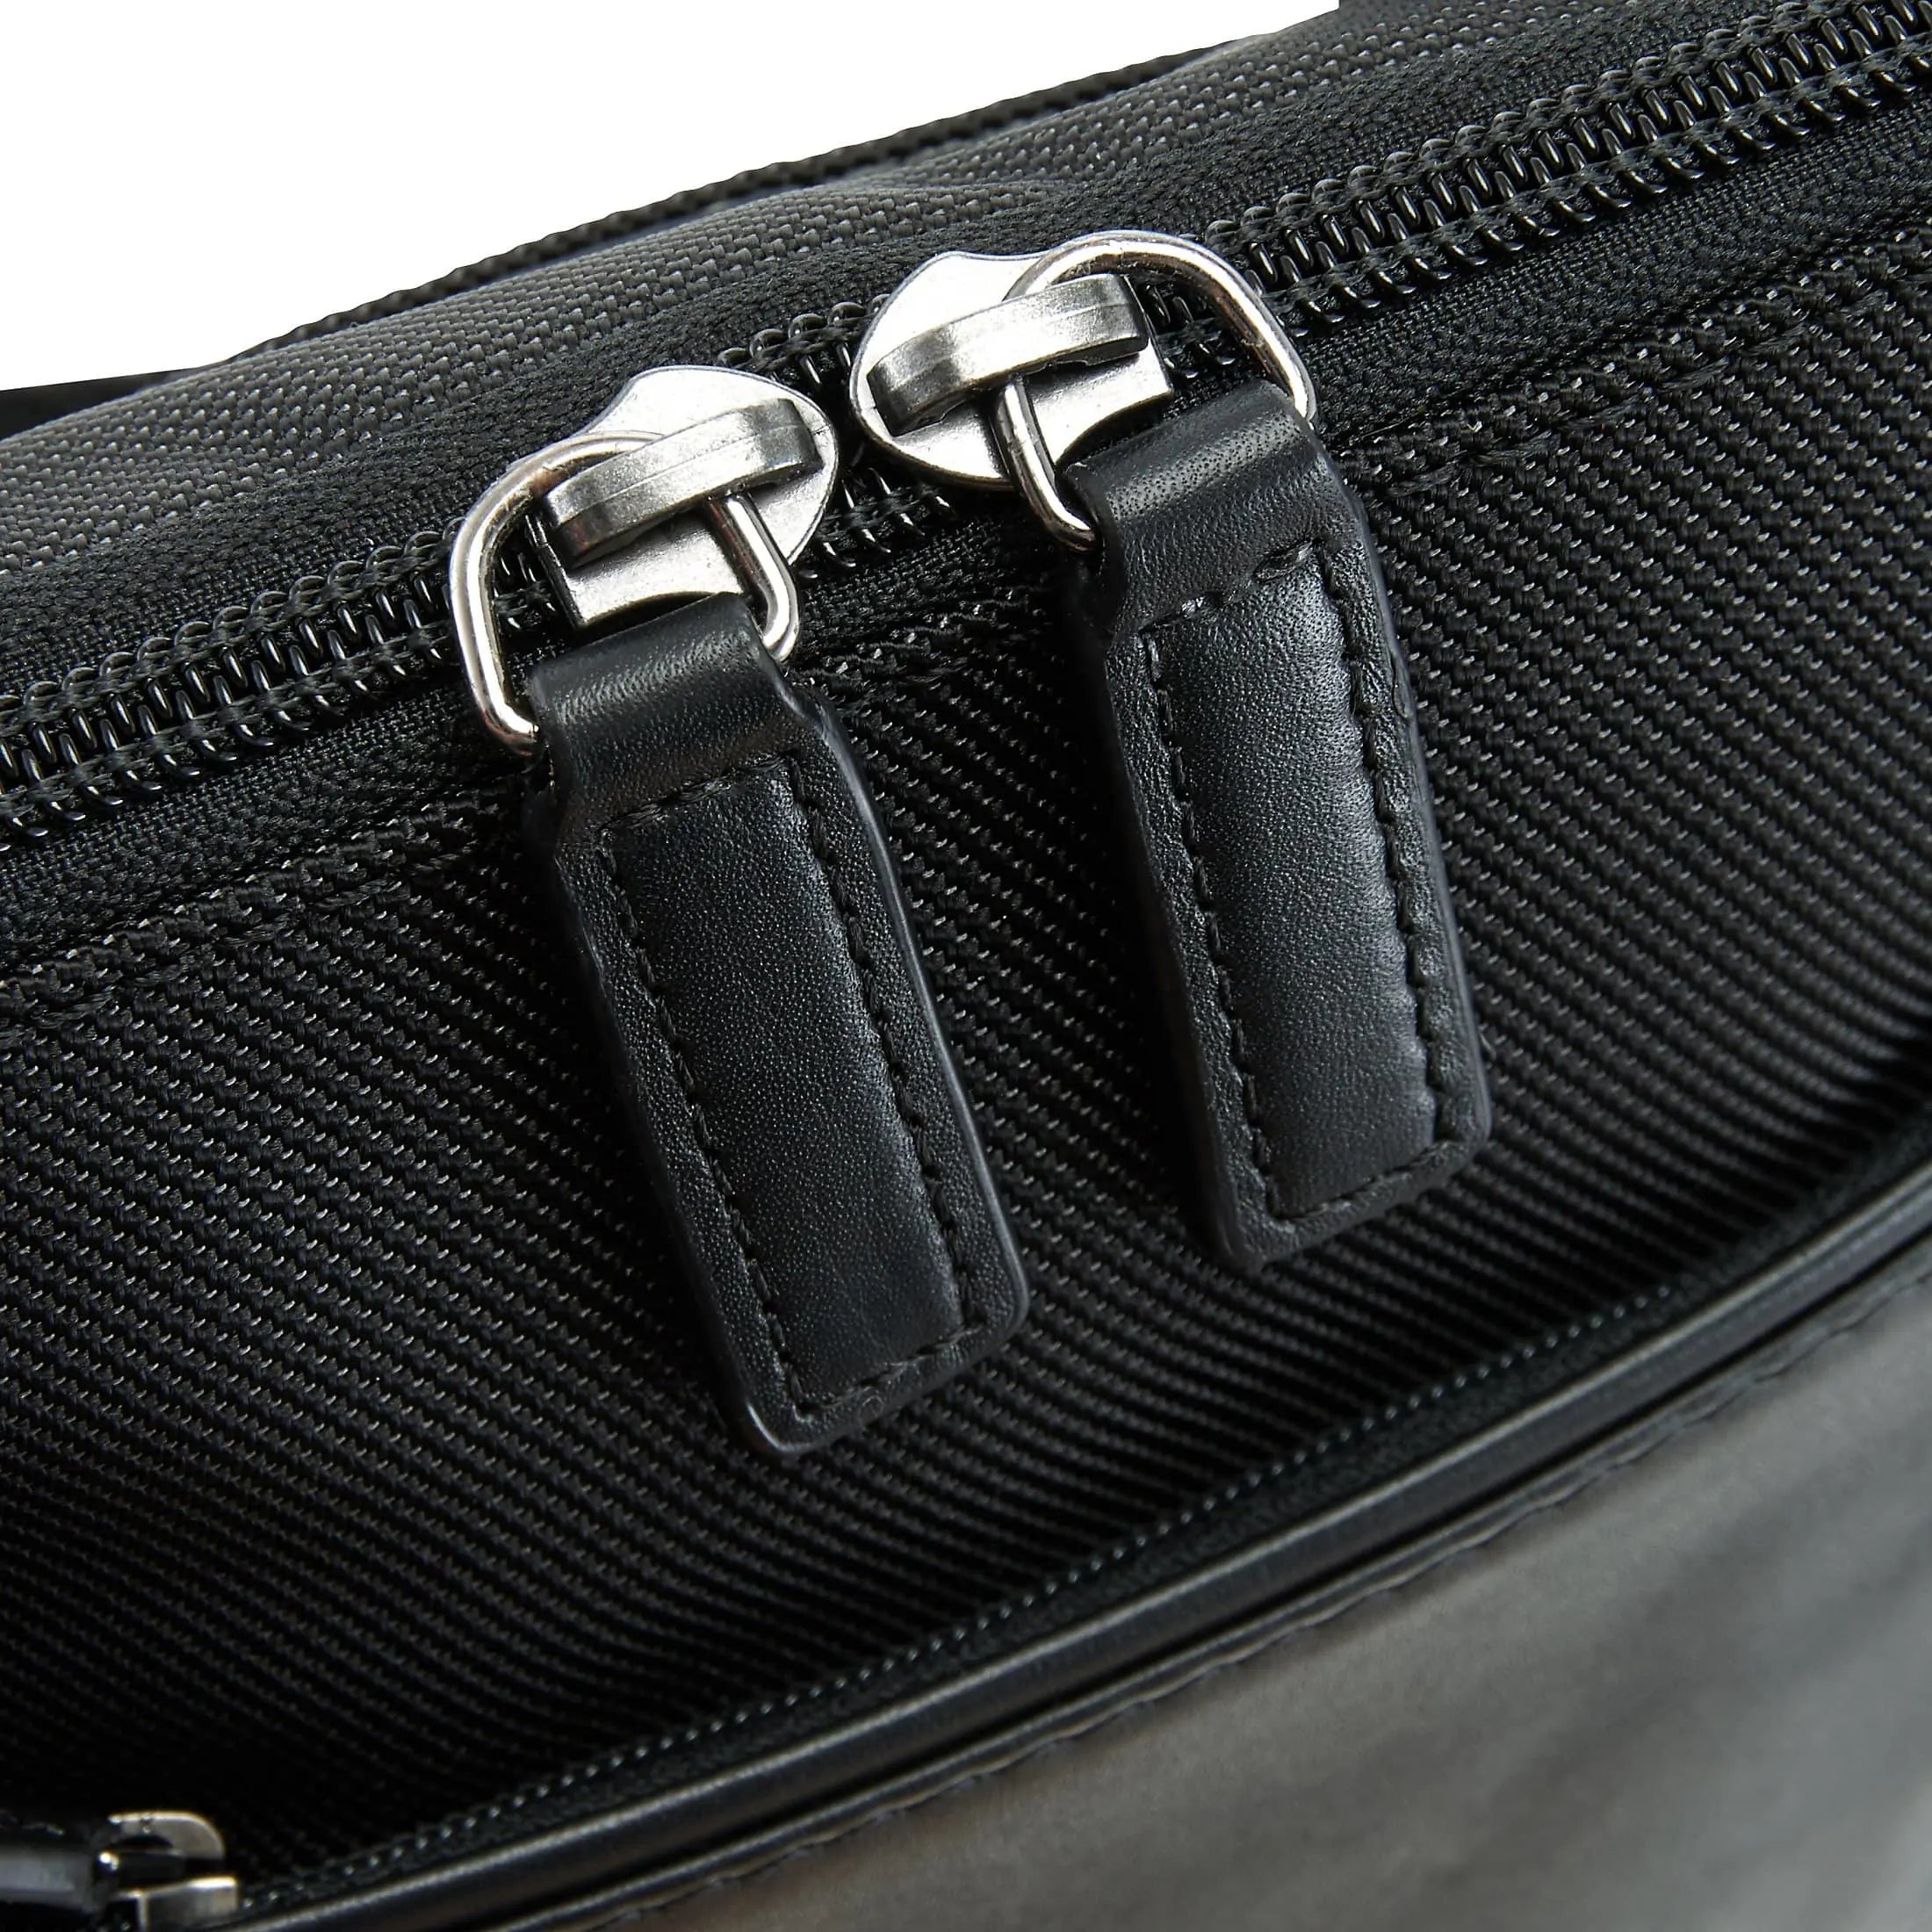 Brics Monza shoulder bag 22 cm - gray-black